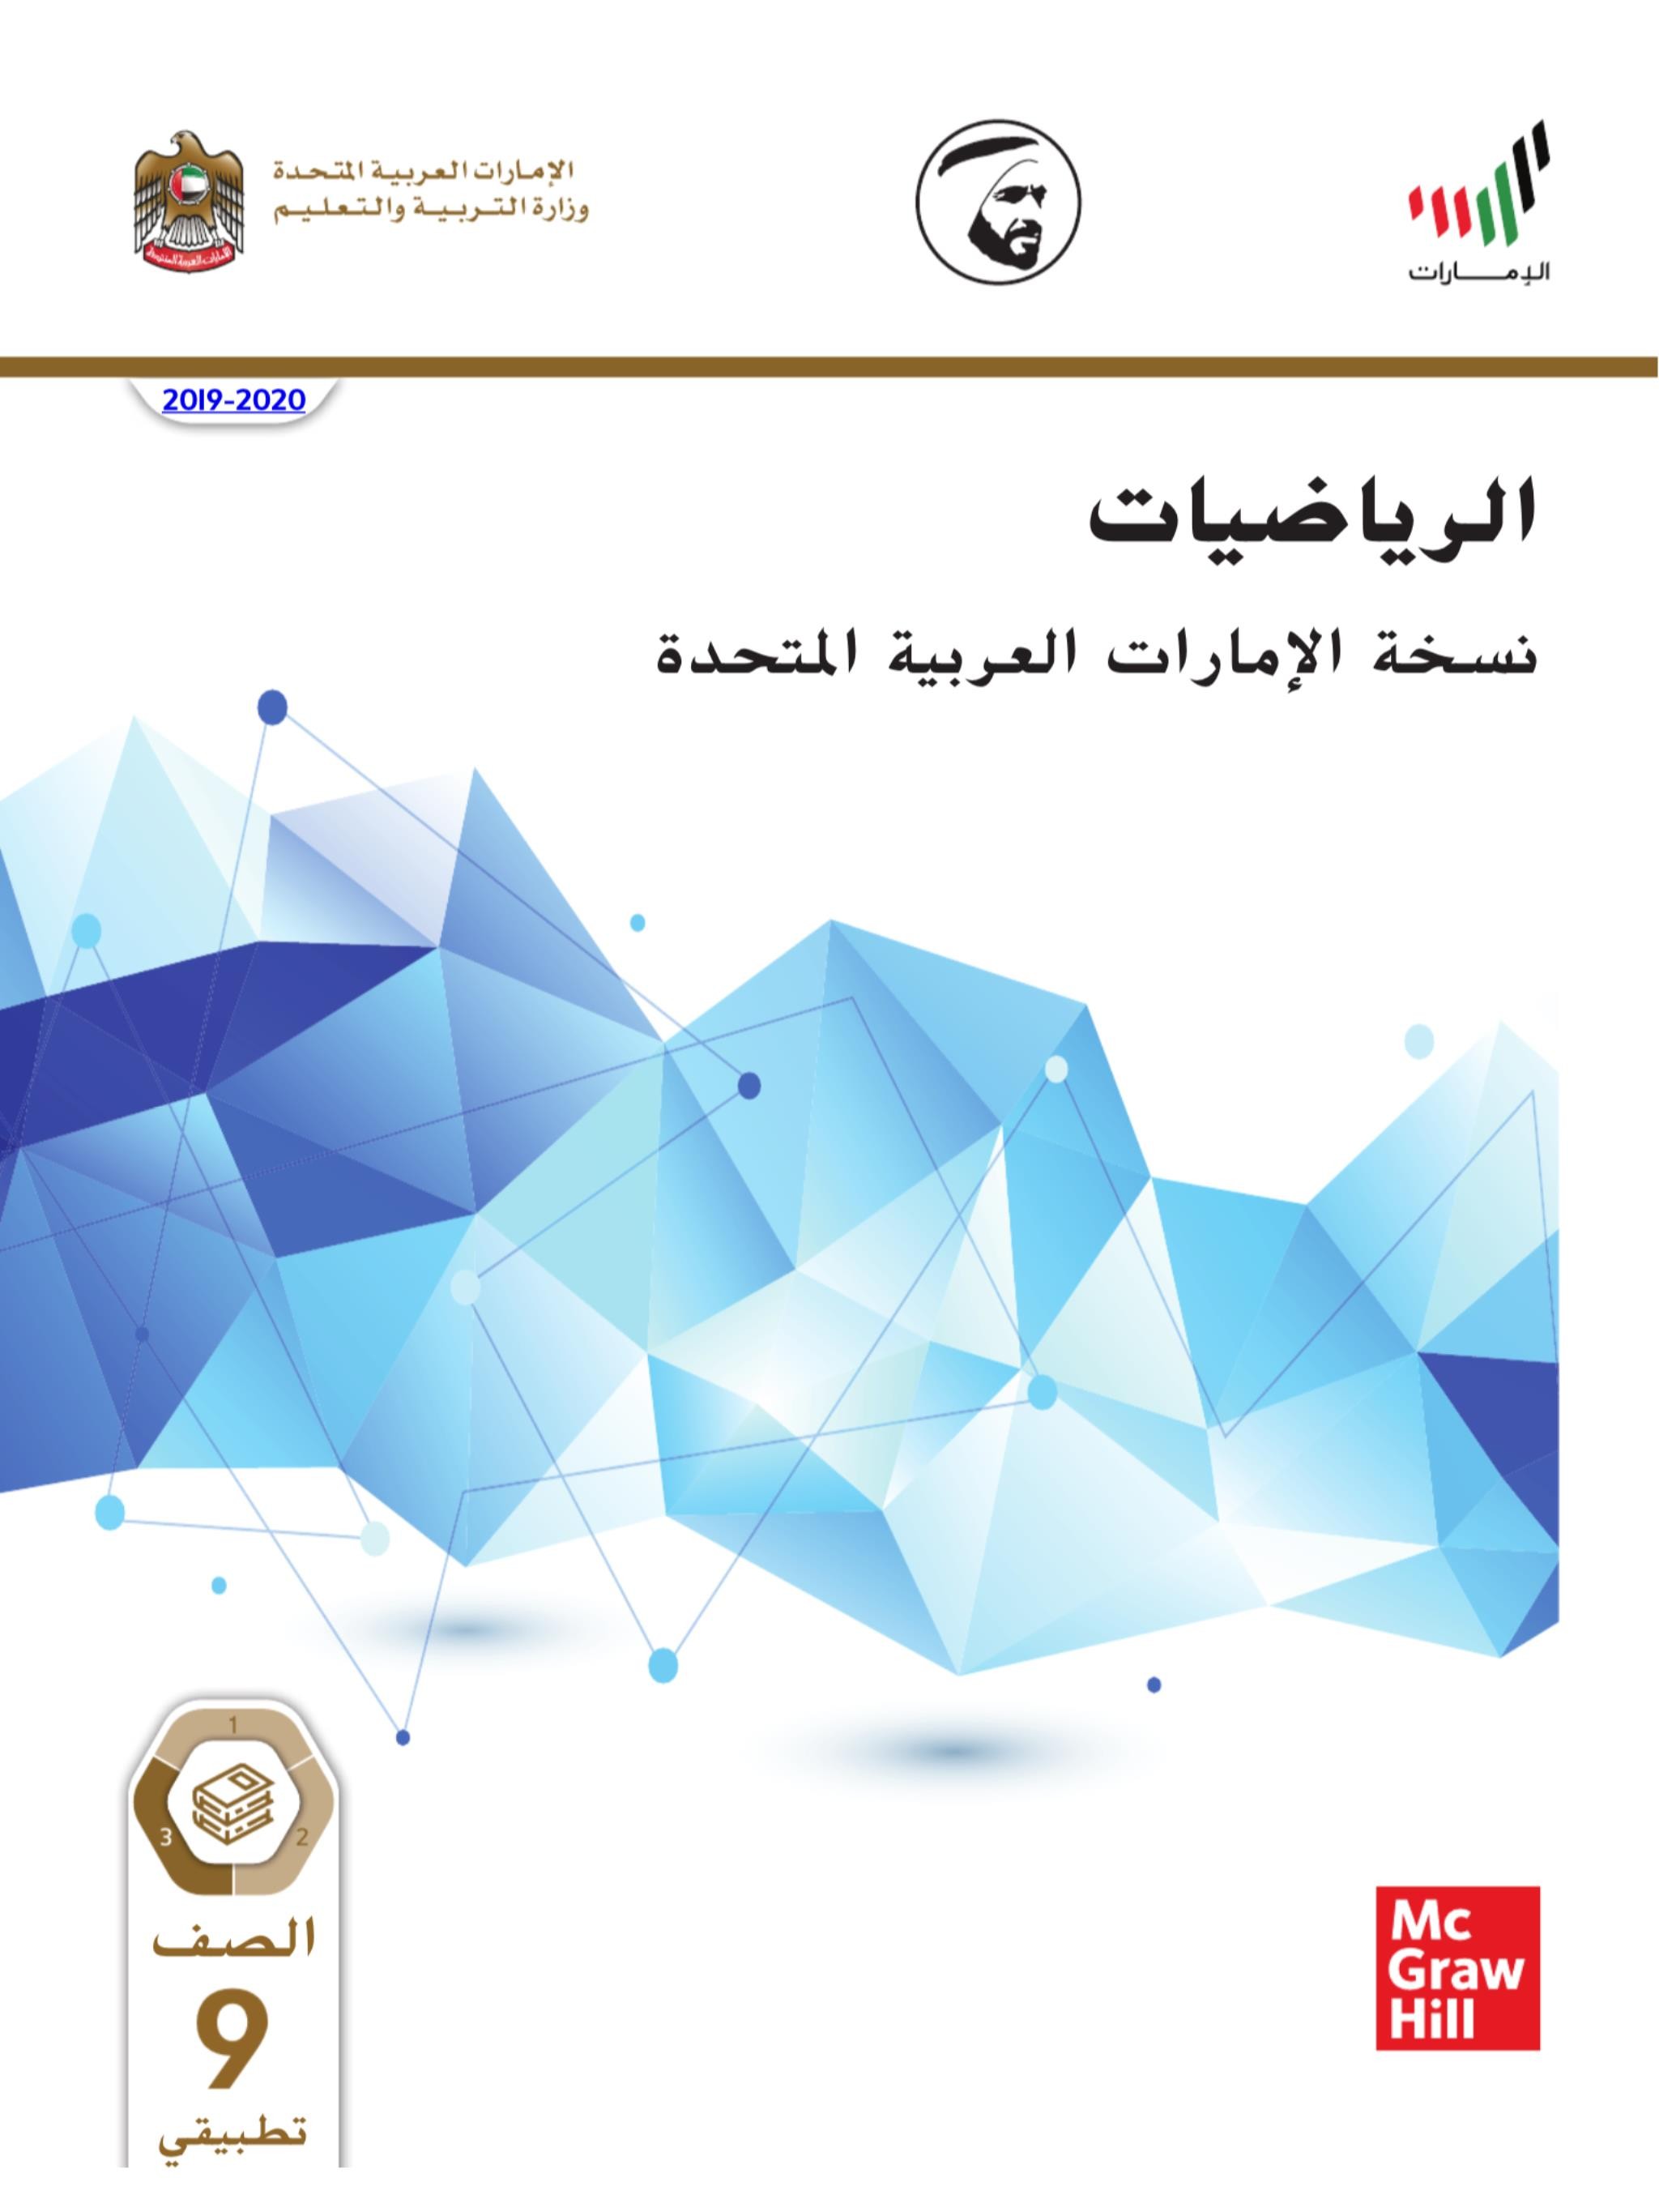 الرياضيات المتكاملة كتاب الطالب الفصل الدراسي الثالث 2019-2020 للصف التاسع تطبيقي